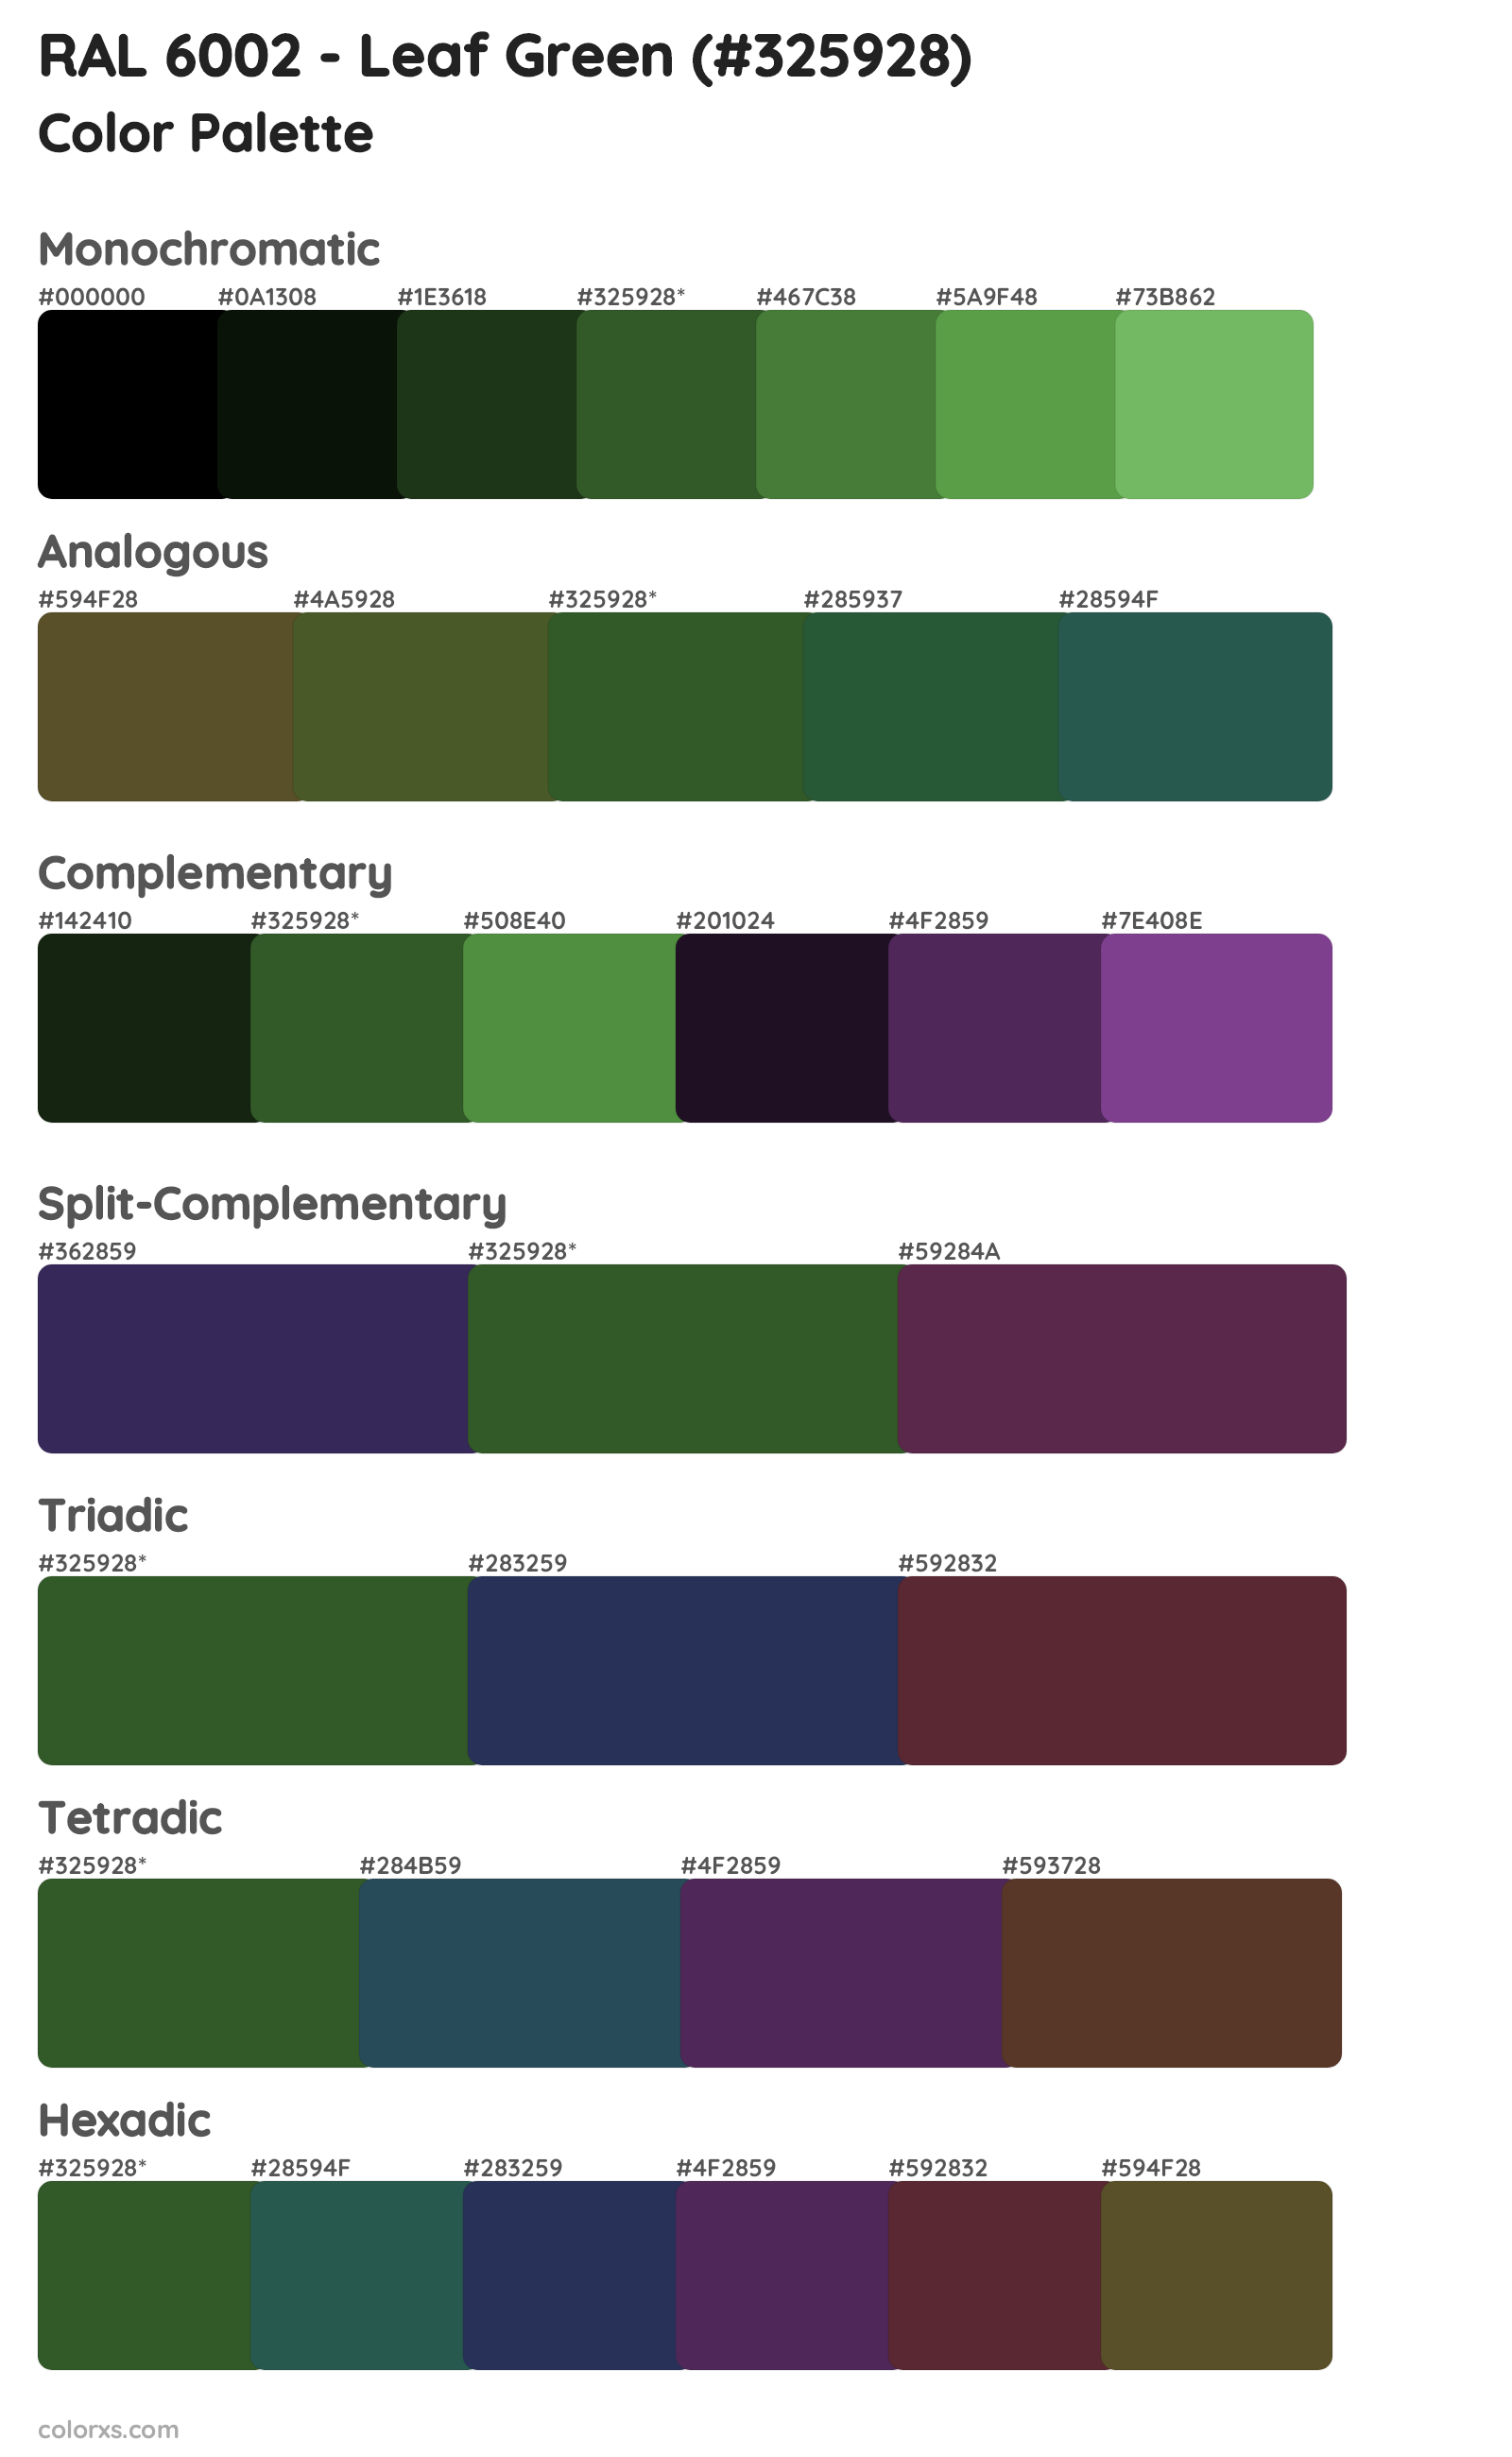 RAL 6002 - Leaf Green Color Scheme Palettes